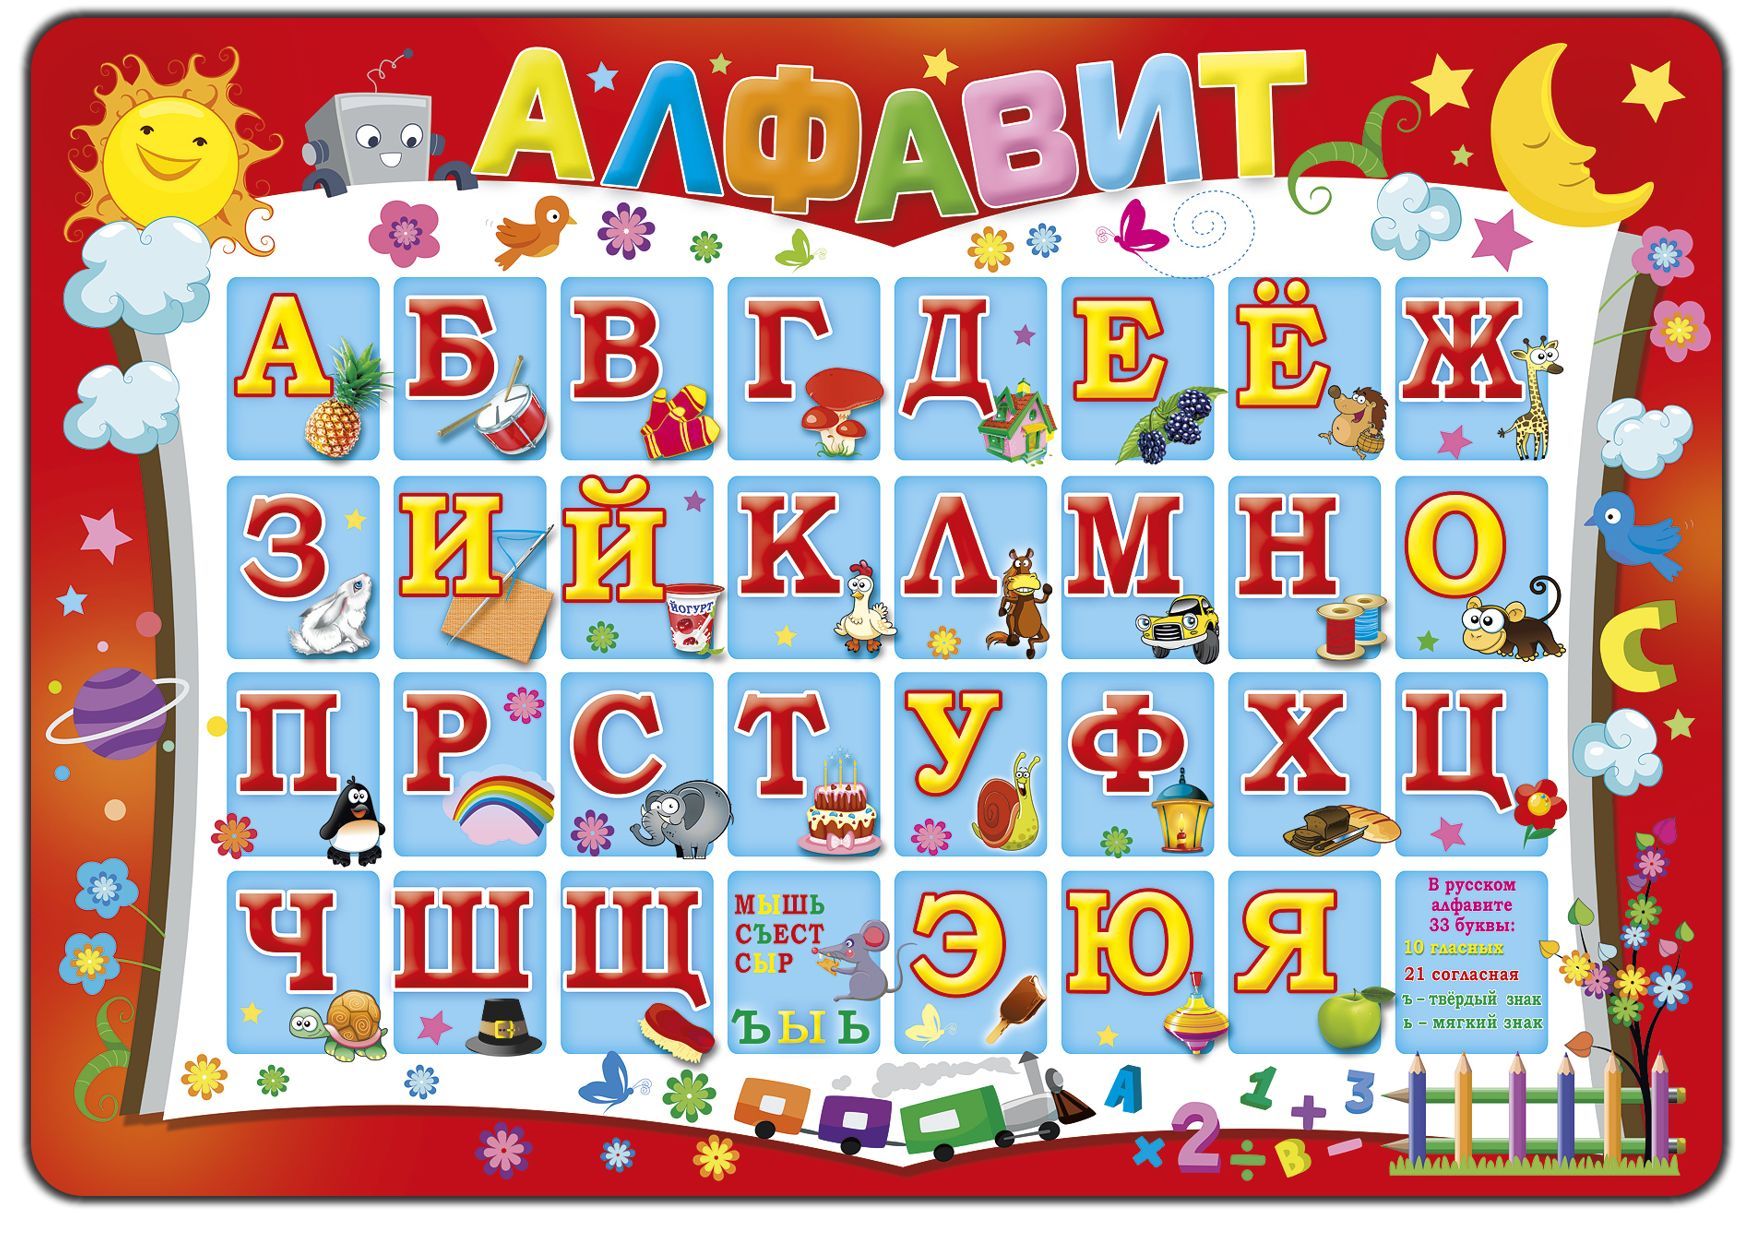 Включи фотки алфавита. Алфавит плакат. Алфати. Алфавит для дошкольников. Алфавит русский для детей.